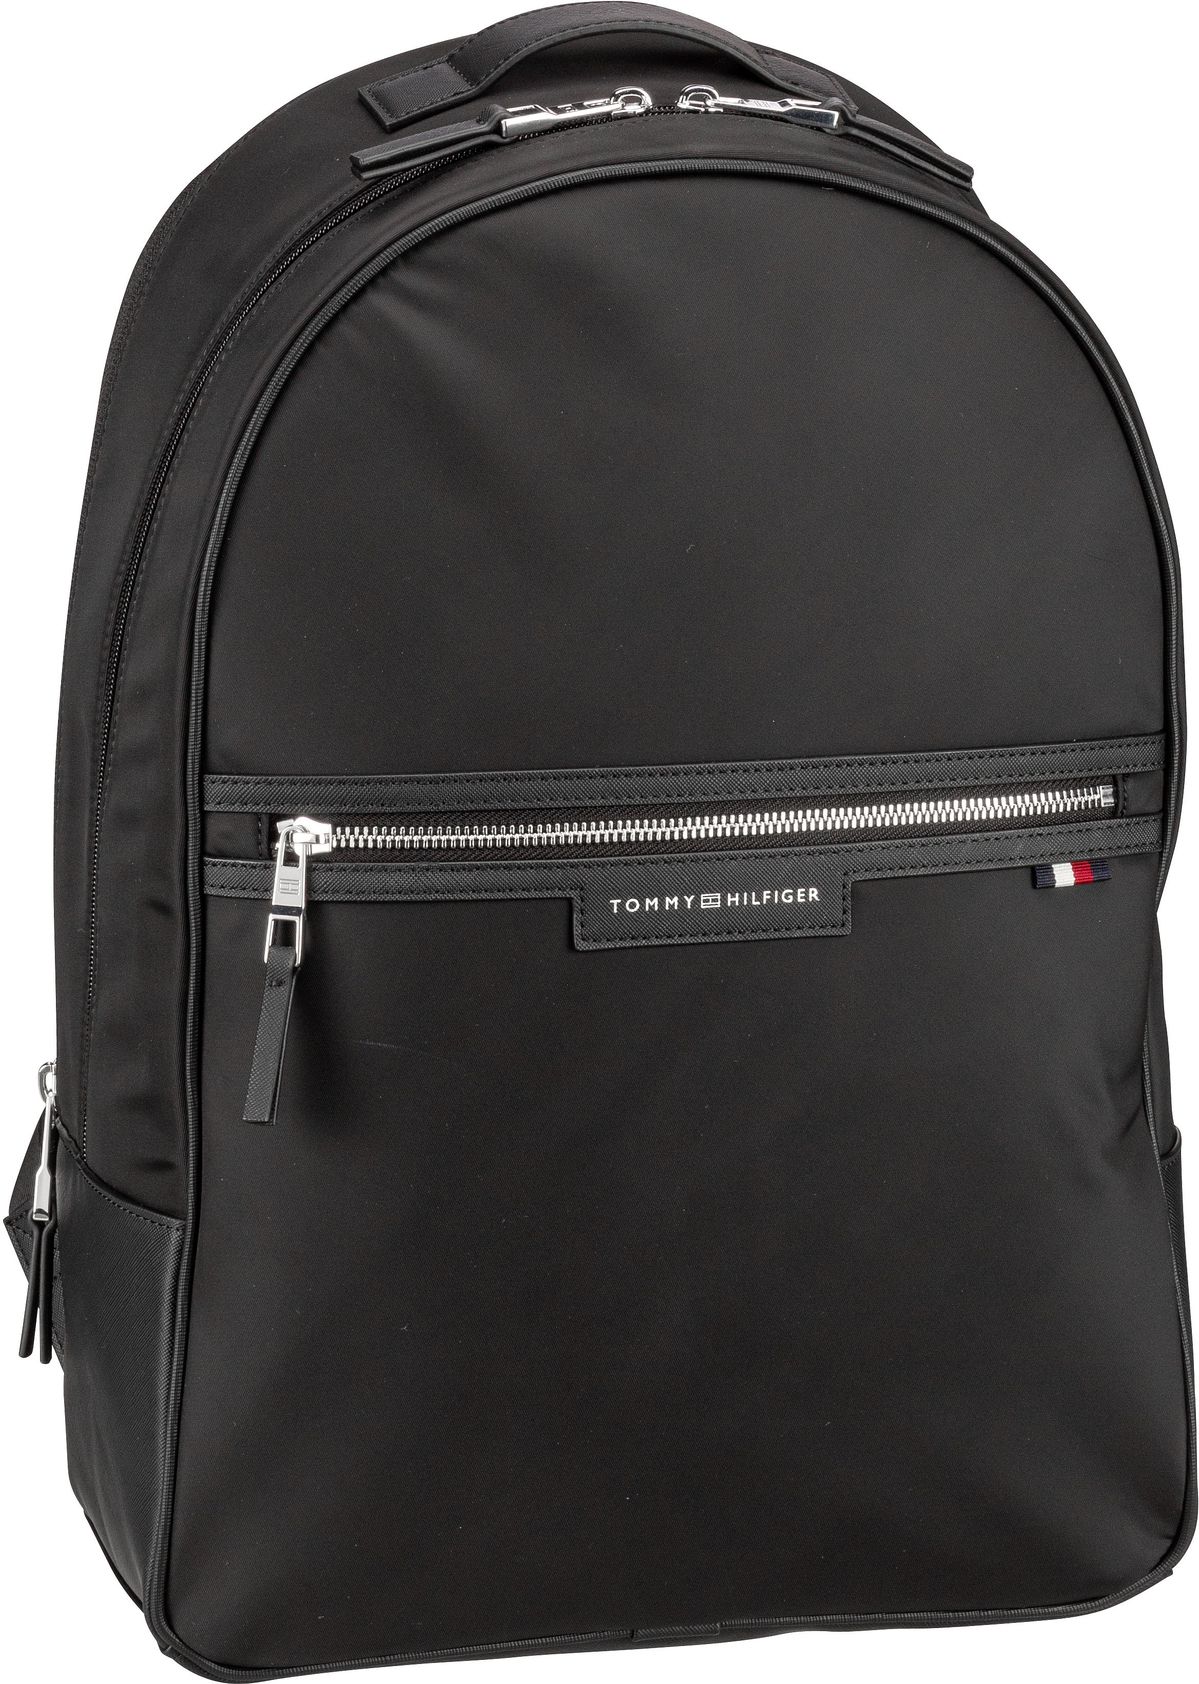 Tommy Hilfiger Tommy Hilfiger TH Urban Repreve Backpack PSP24 in Schwarz (22.6 Liter), Rucksack / Backpack